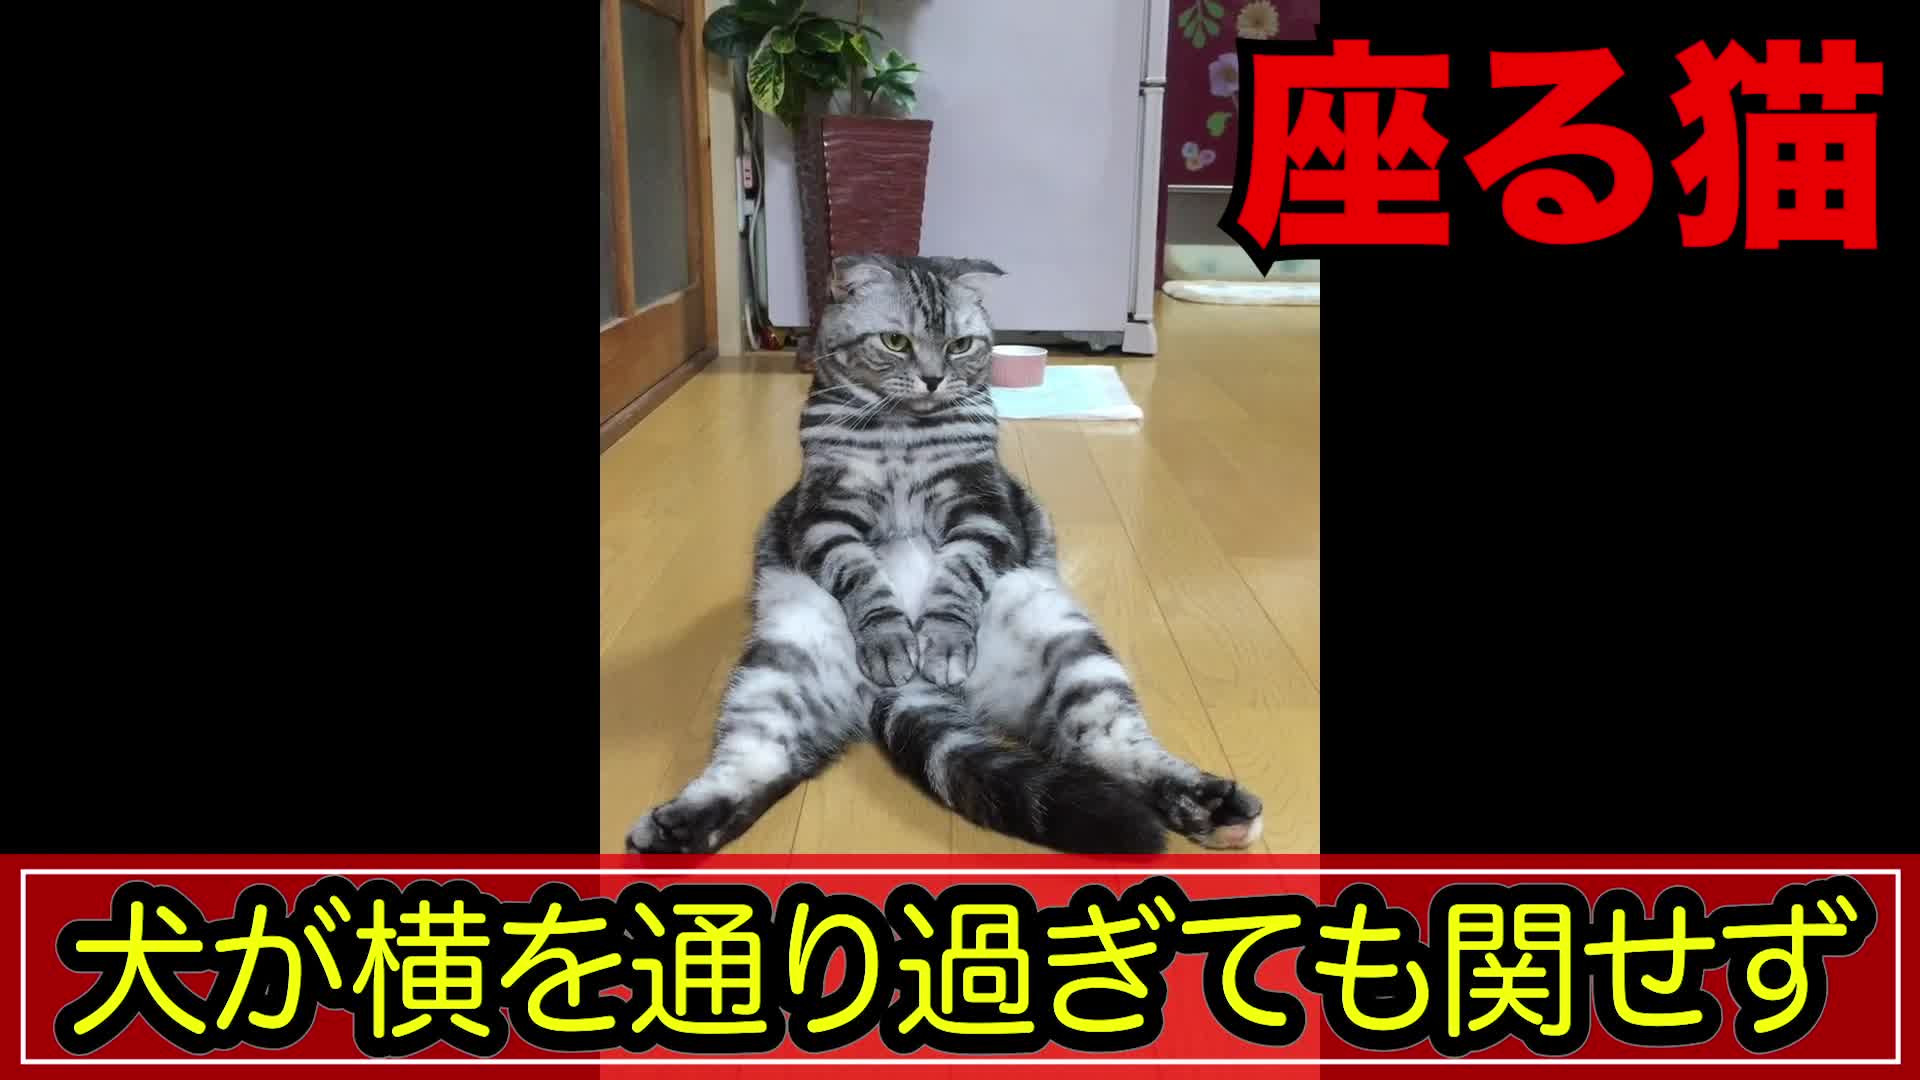 スコ座り 犬がきても座り続ける猫 Videocash ビデオキャッシュ Yahoo Japan